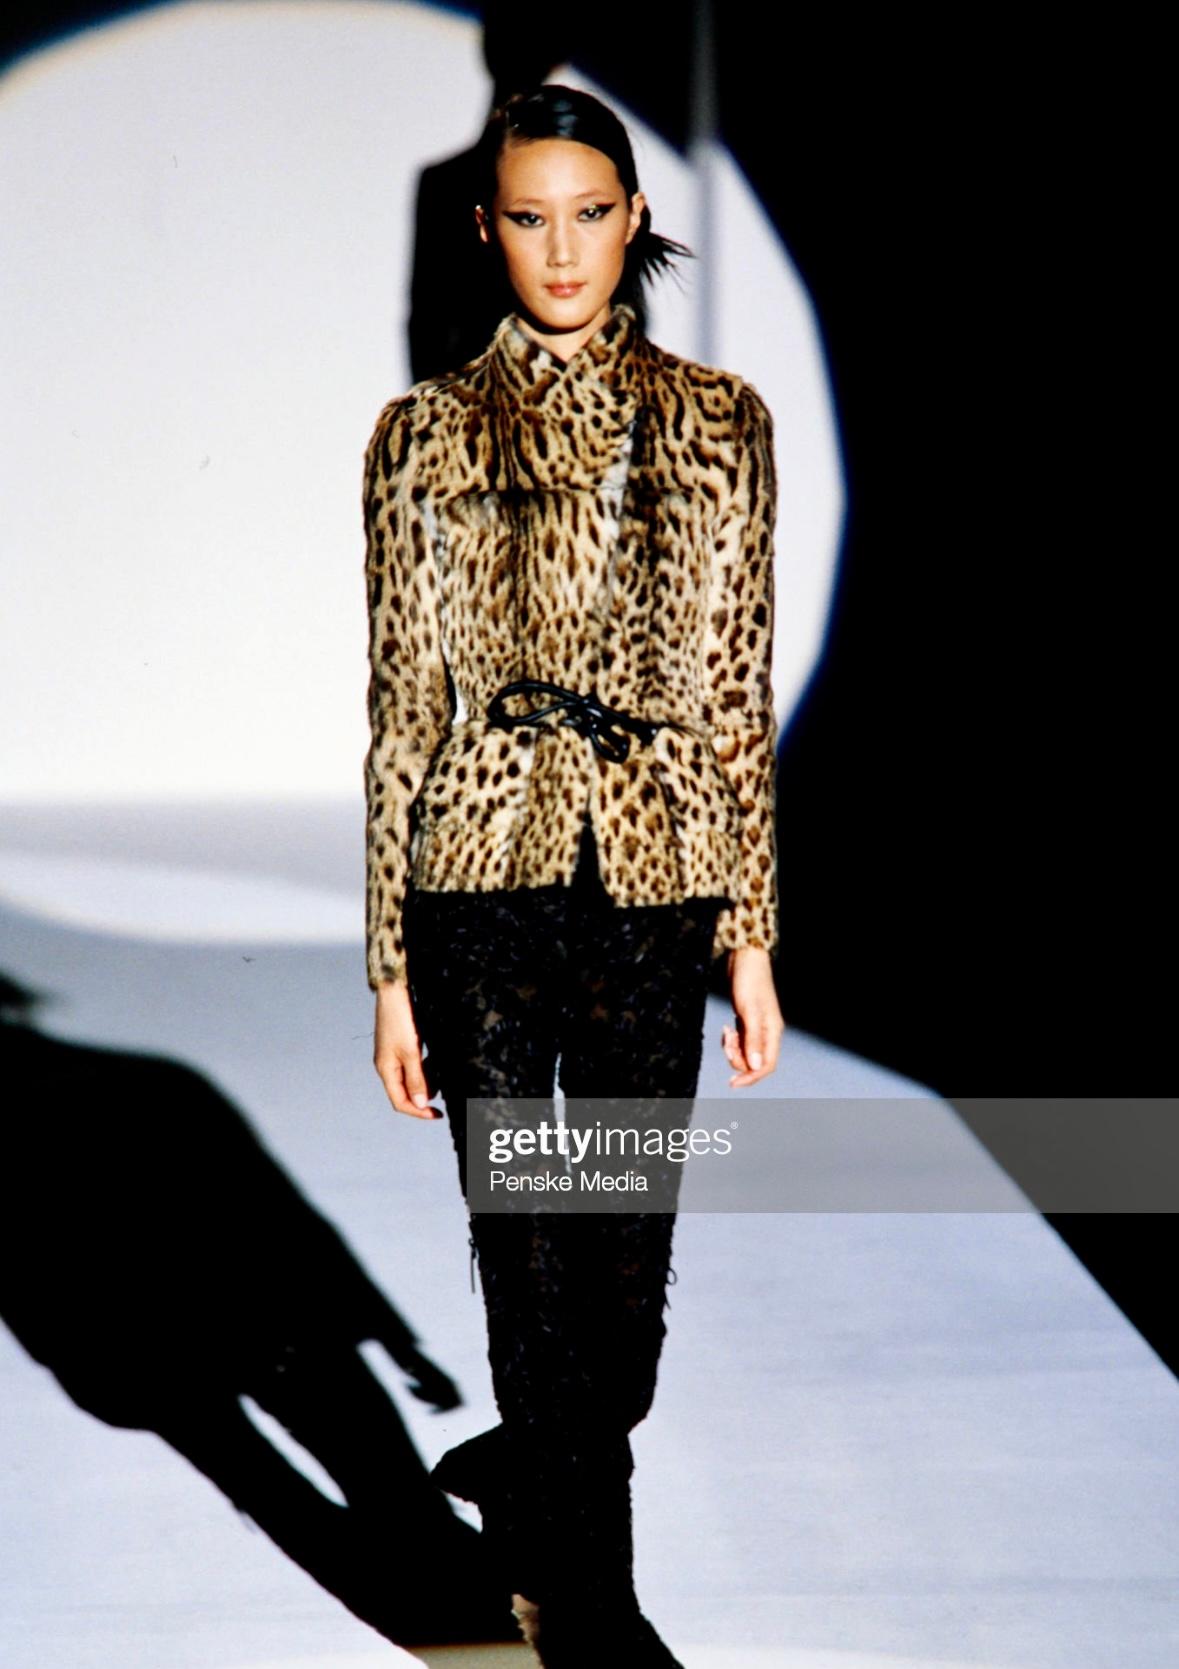 Wir präsentieren einen unglaublichen Pelzmantel mit Leopardenmuster von Gucci, entworfen von Tom Ford. Dieser Mantel aus der Herbst/Winter-Kollektion 1999 wurde erstmals auf dem Laufsteg gezeigt und war auch in der Werbekampagne der Saison zu sehen.